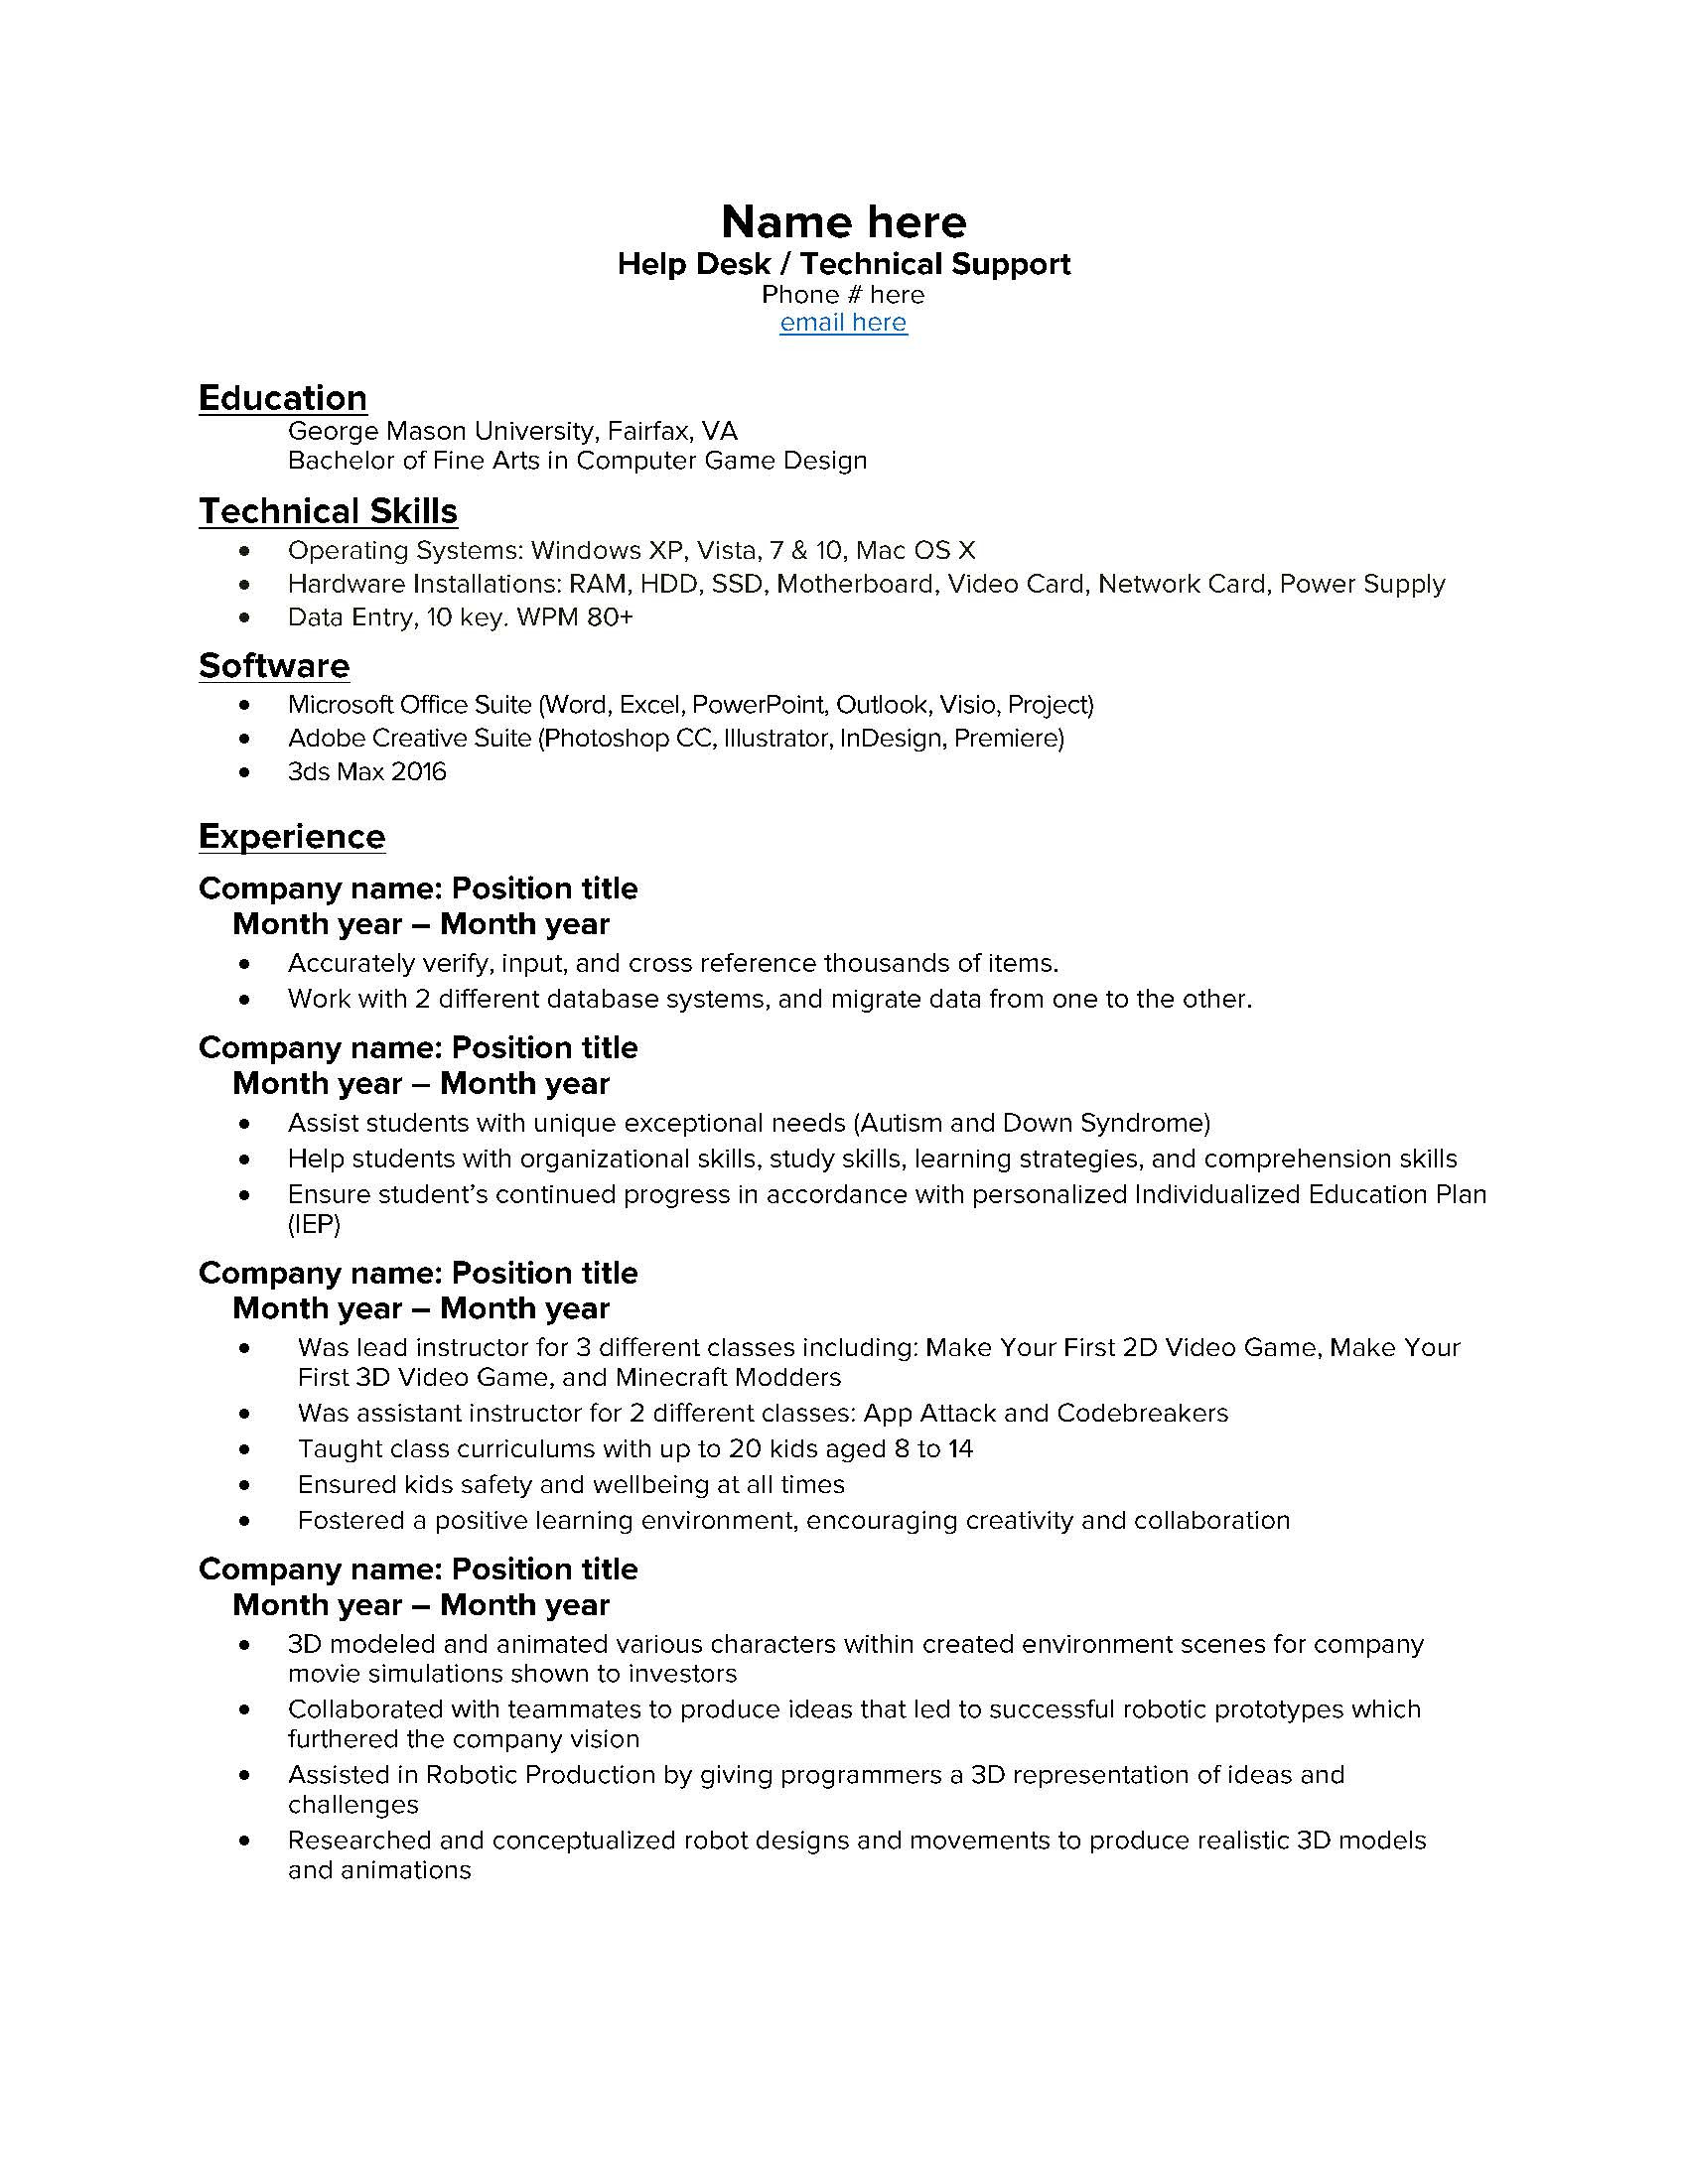 Sample Enret Level Help Desk toer 1 Resume Entry Level Help Desk Resume : R/resumes